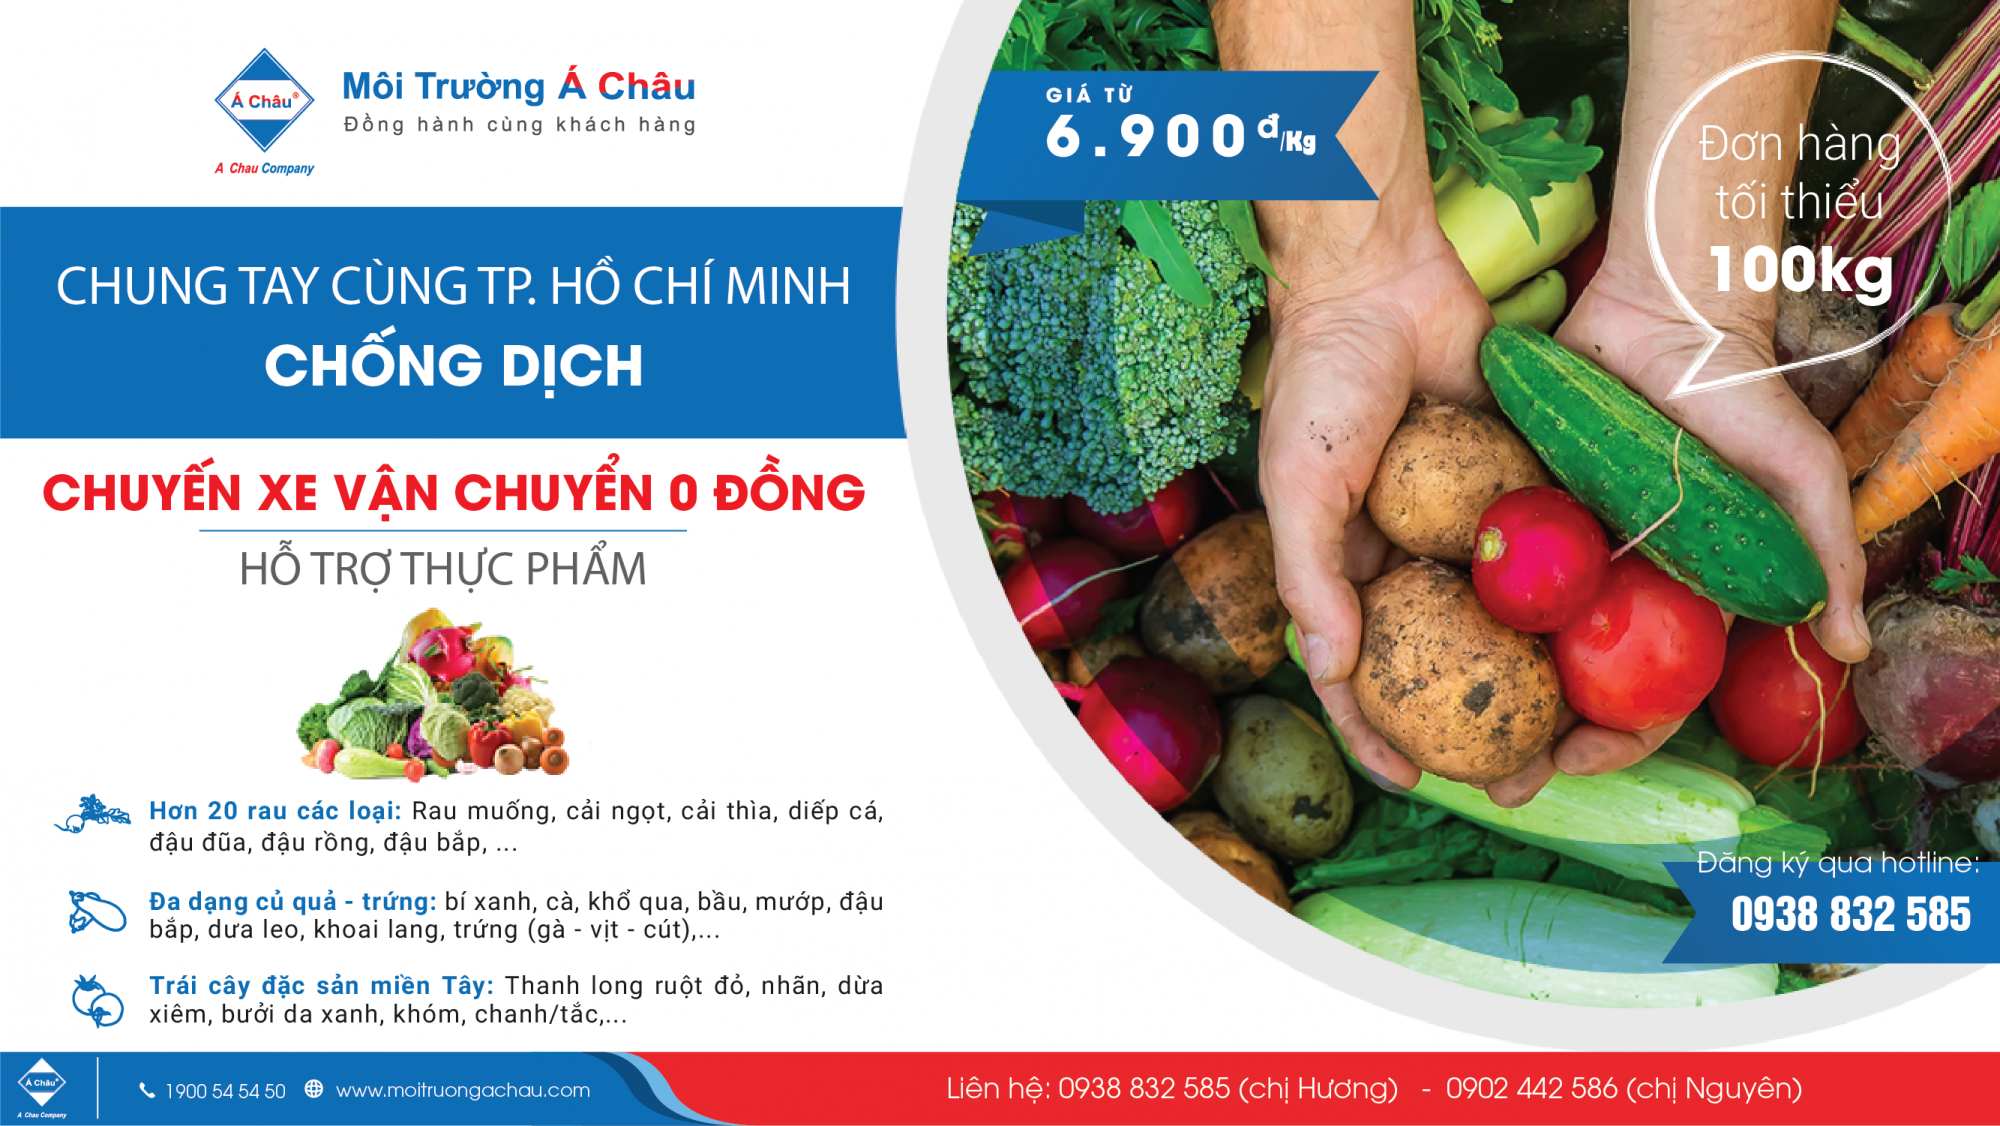 Chung tay cùng Tp. Hồ Chí Minh chống dịch: hỗ trợ thực phẩm chỉ từ: 6.900 vnđ/kg